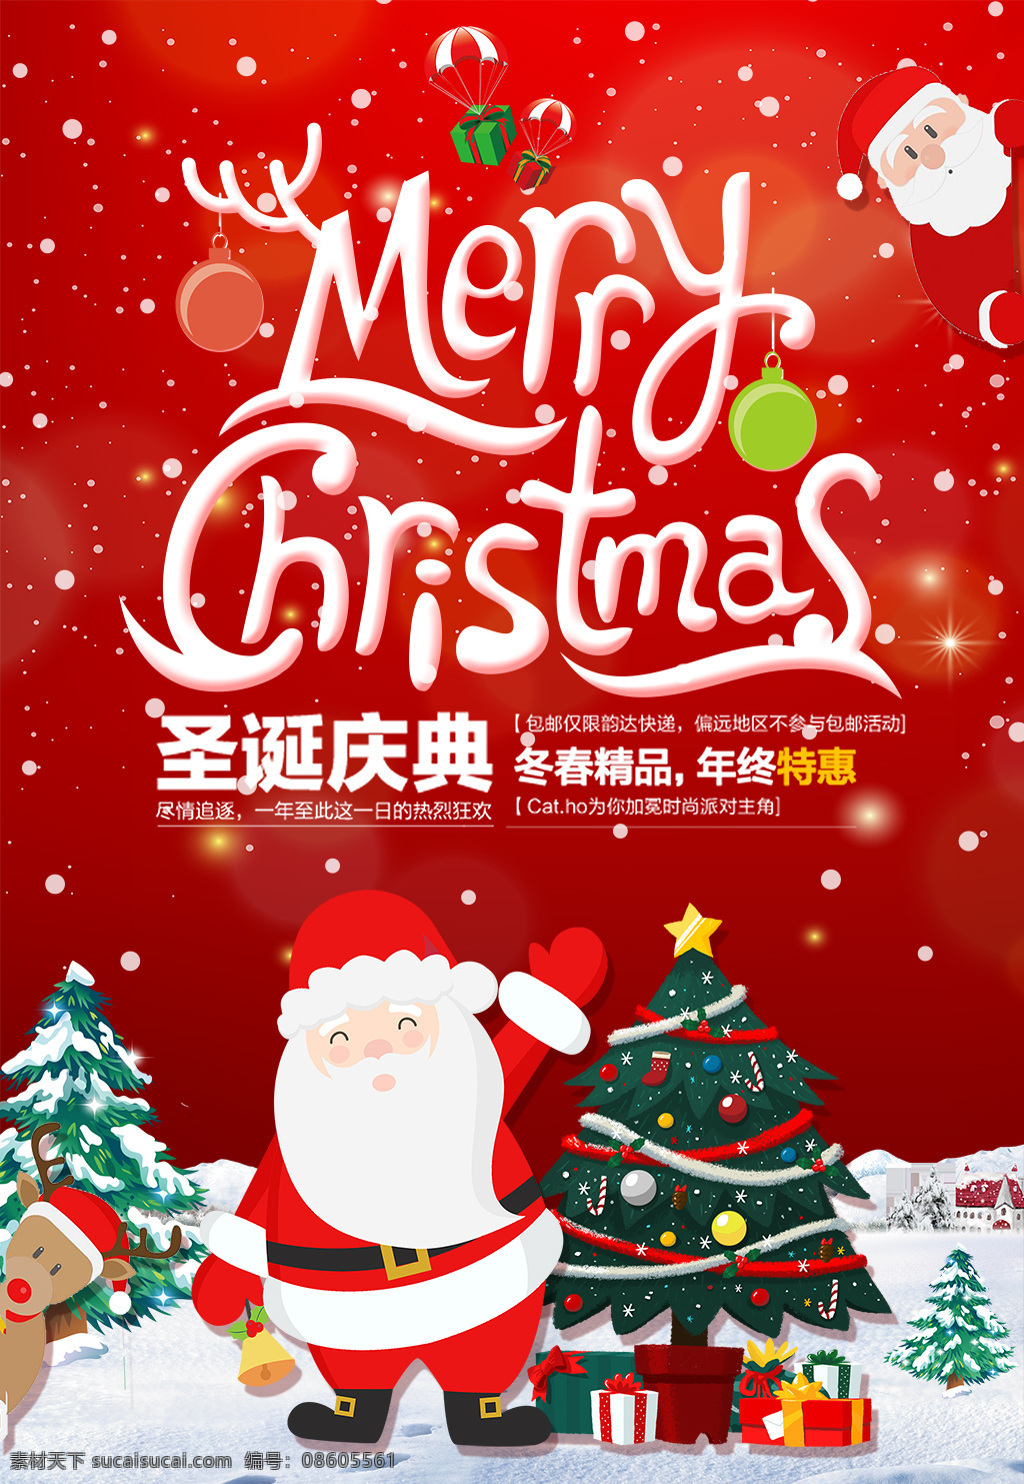 红色 圣诞节 喜庆 海报 节日庆典 促销 活动 圣诞庆典